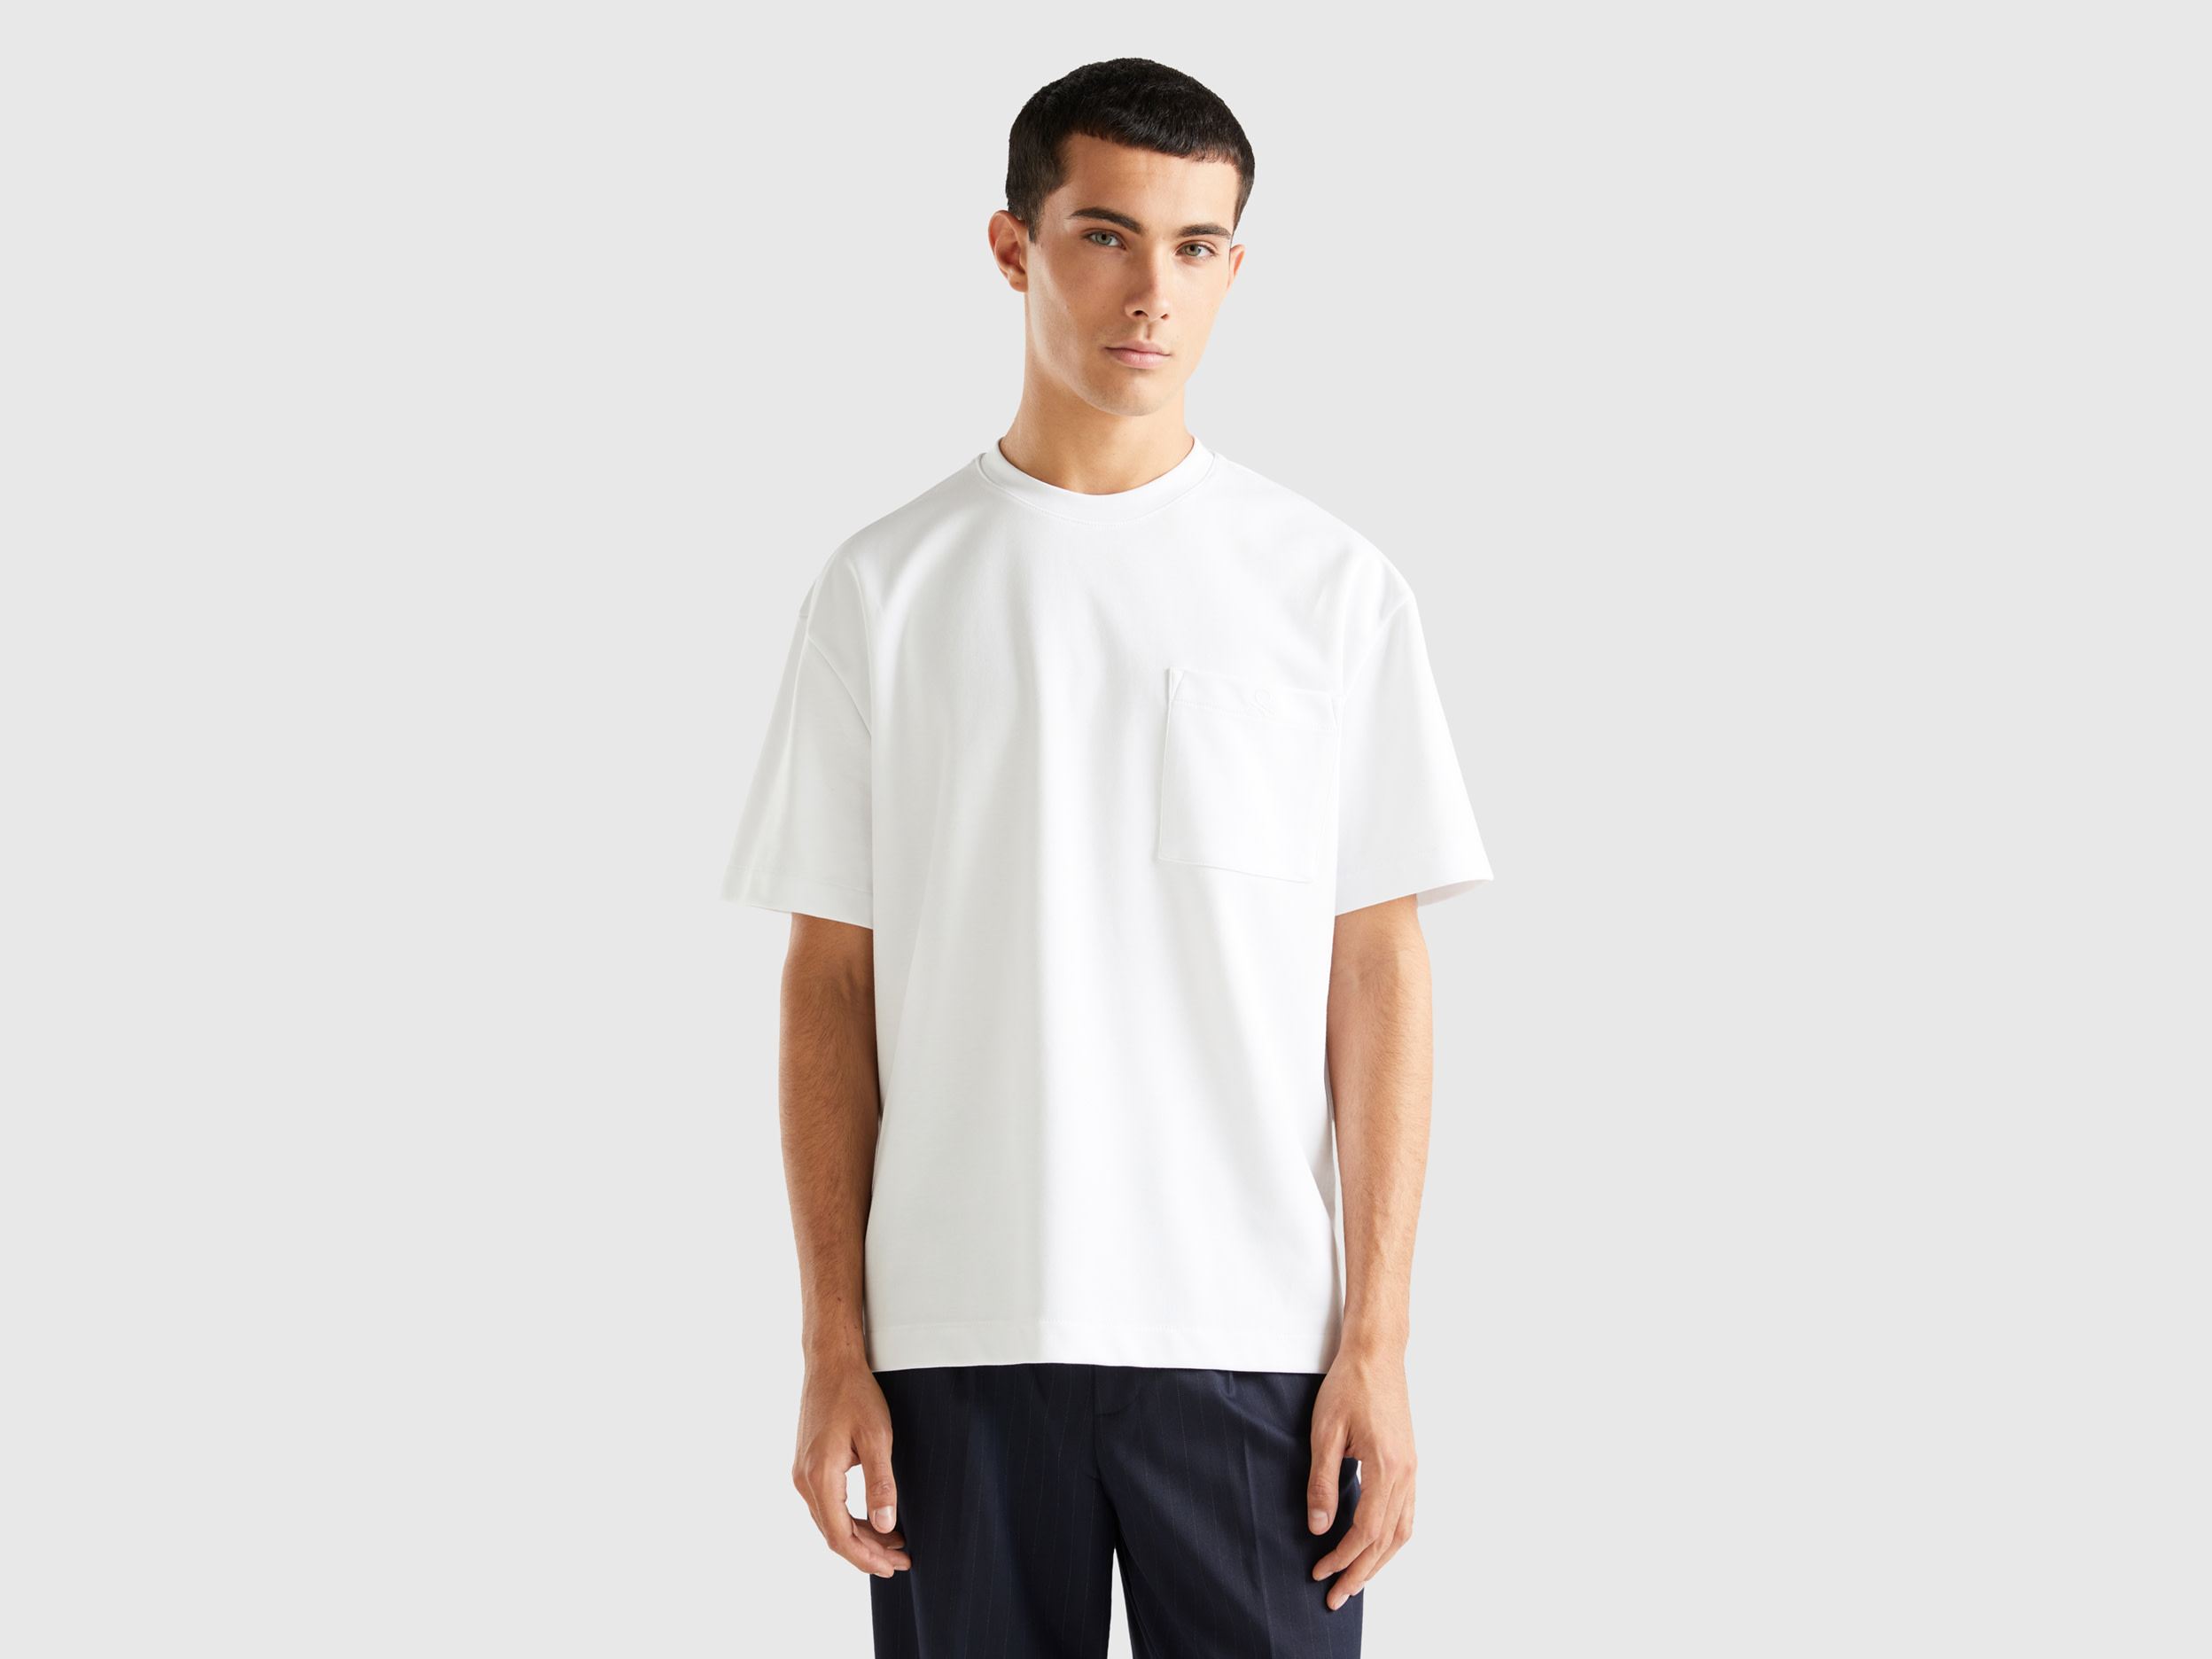 Benetton, Oversized T-shirt With Pocket, size XXXL, White, Men